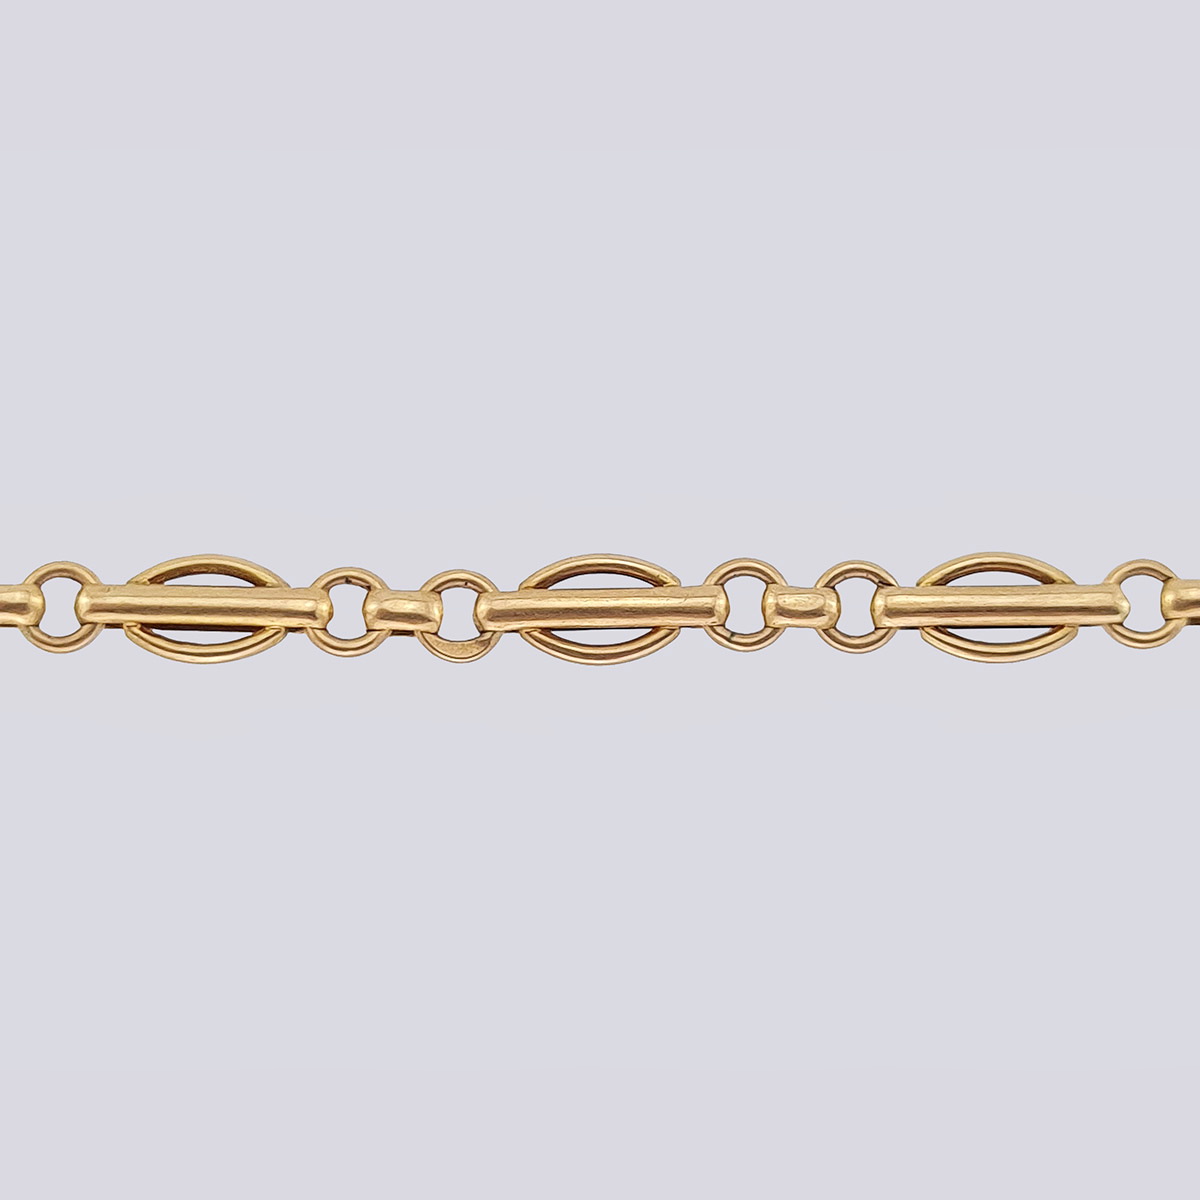 Золотая цепь для часов 32 см (Россия, 19 век)